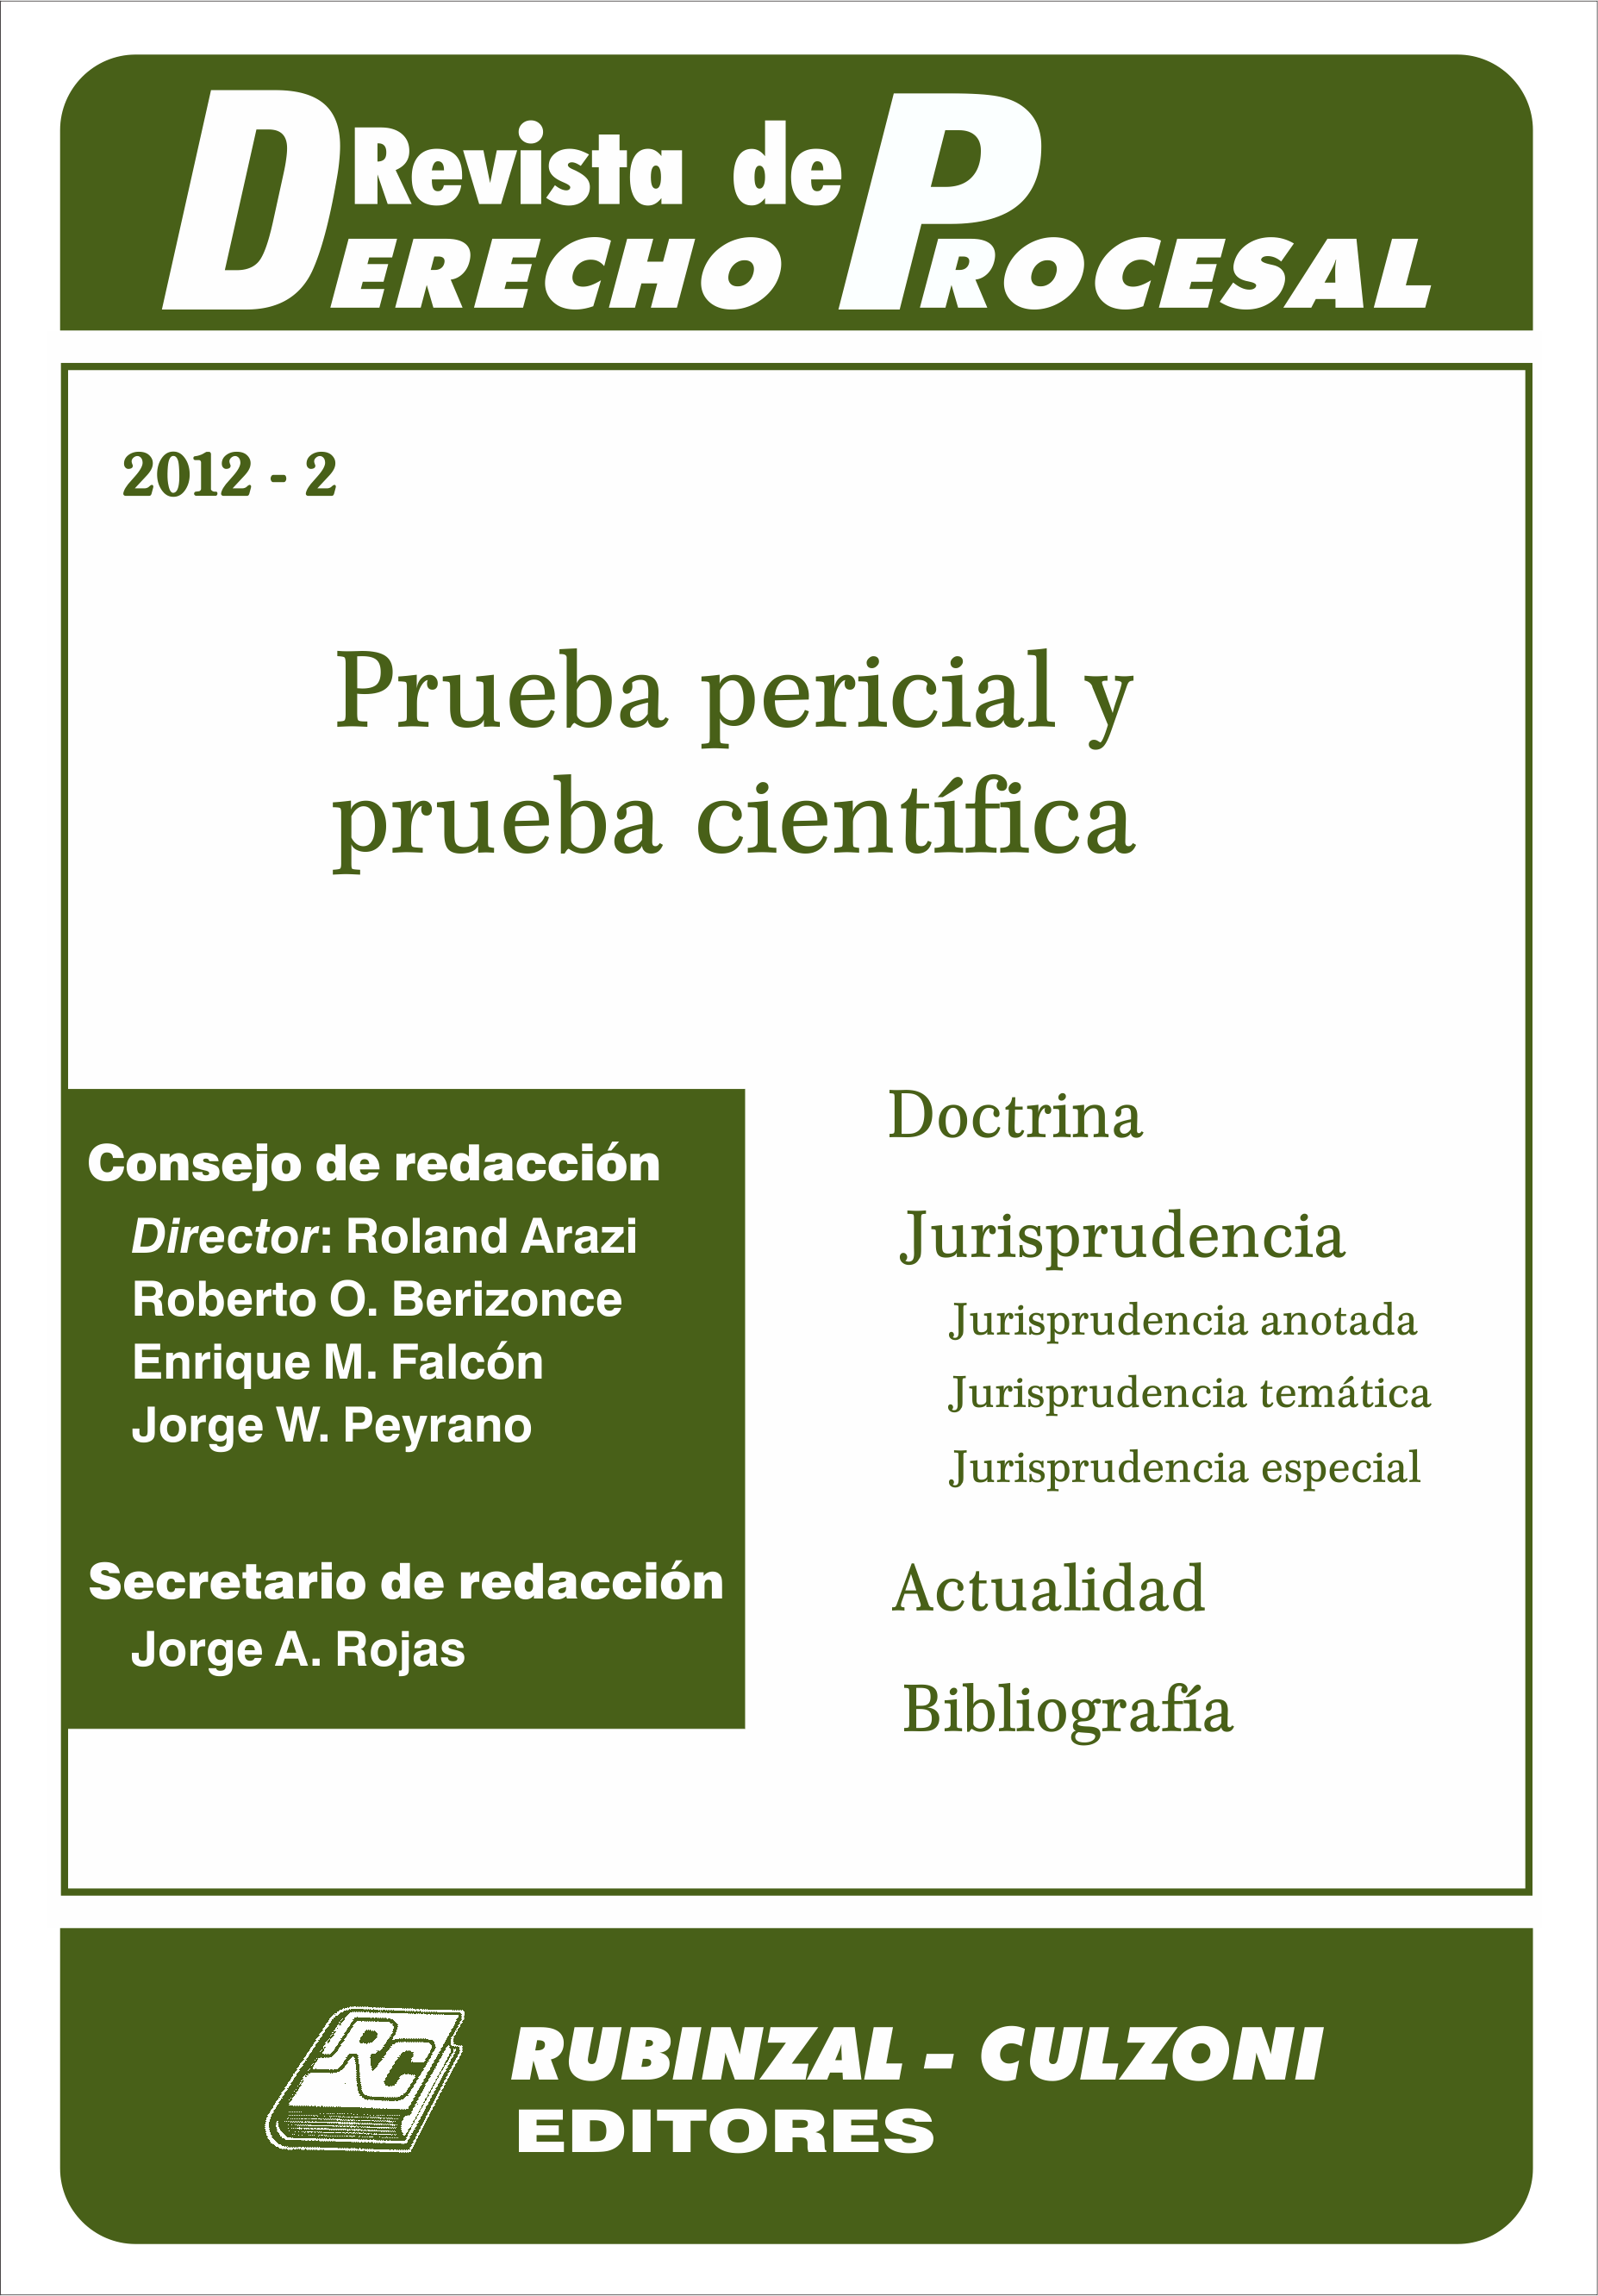 Revista de Derecho Procesal - Prueba pericial y prueba científica.